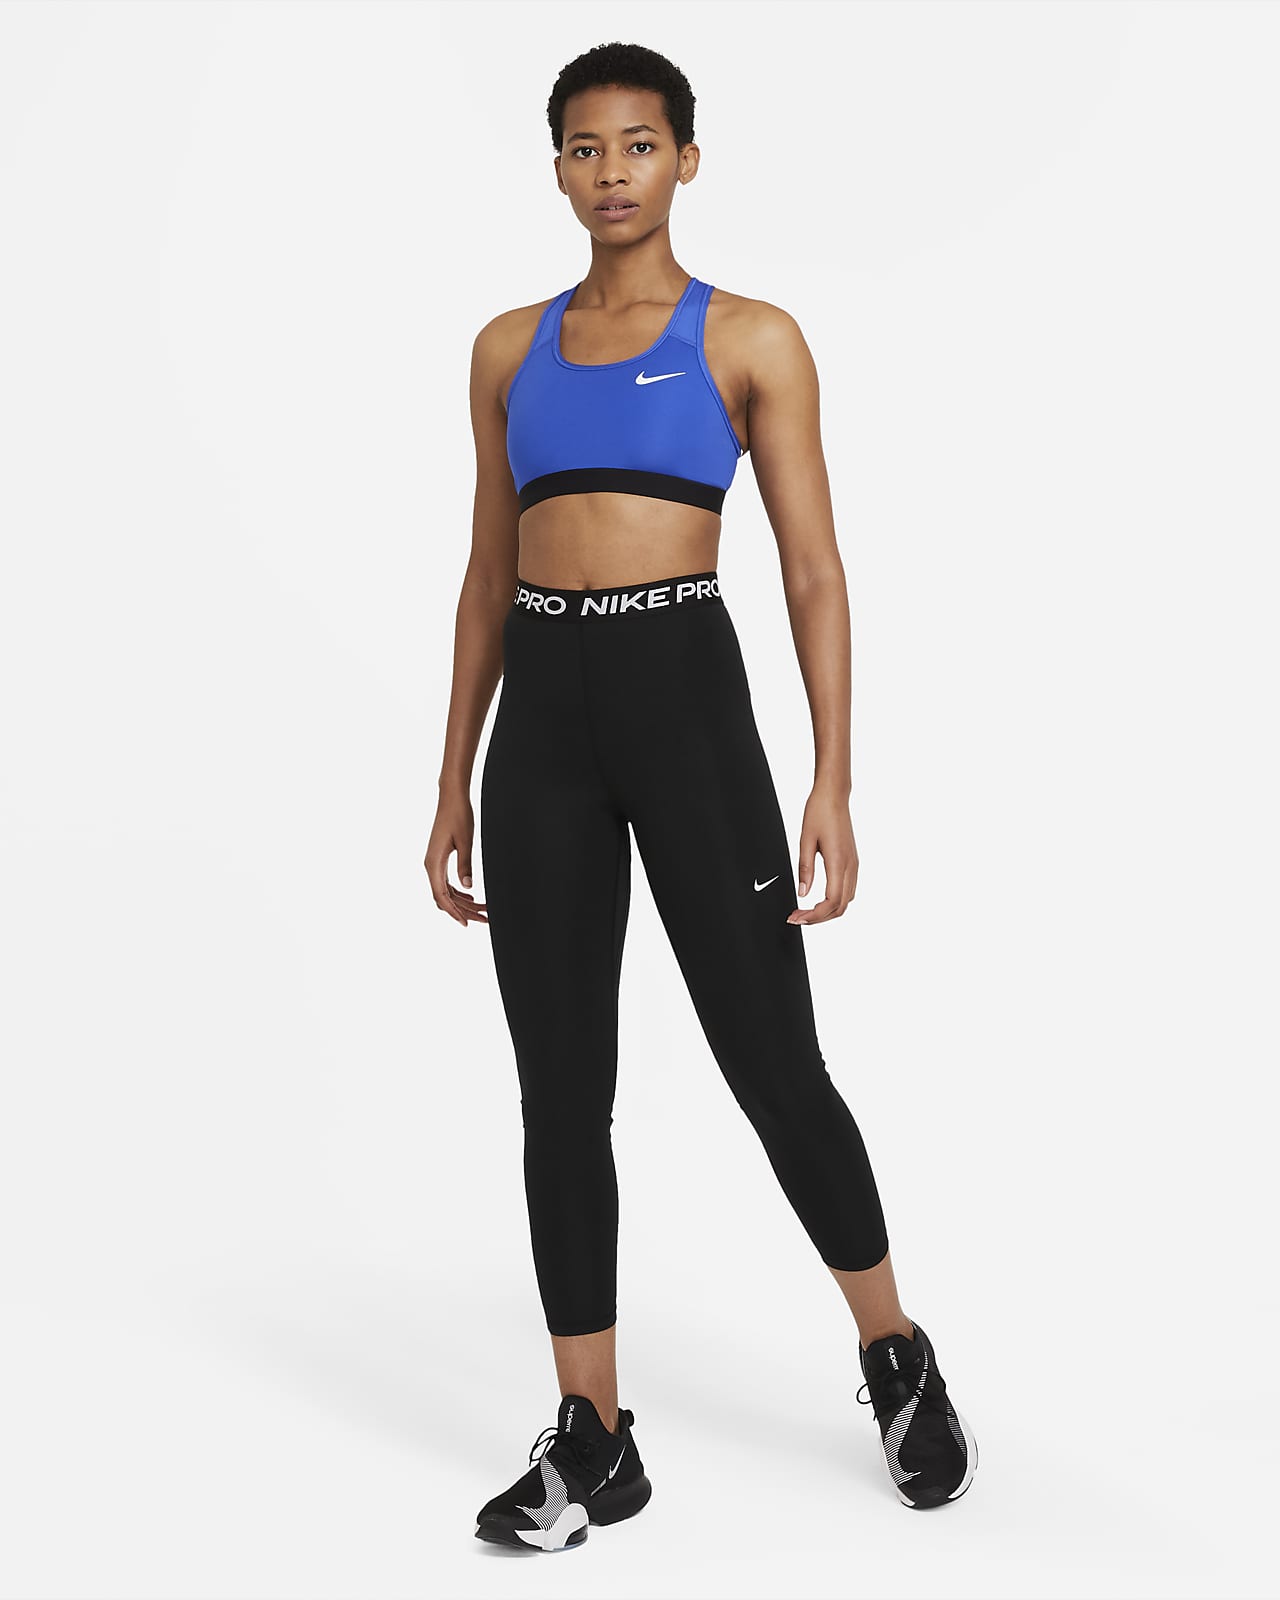 Nike Pro Dri Fit Leggings Size Medium -  Singapore